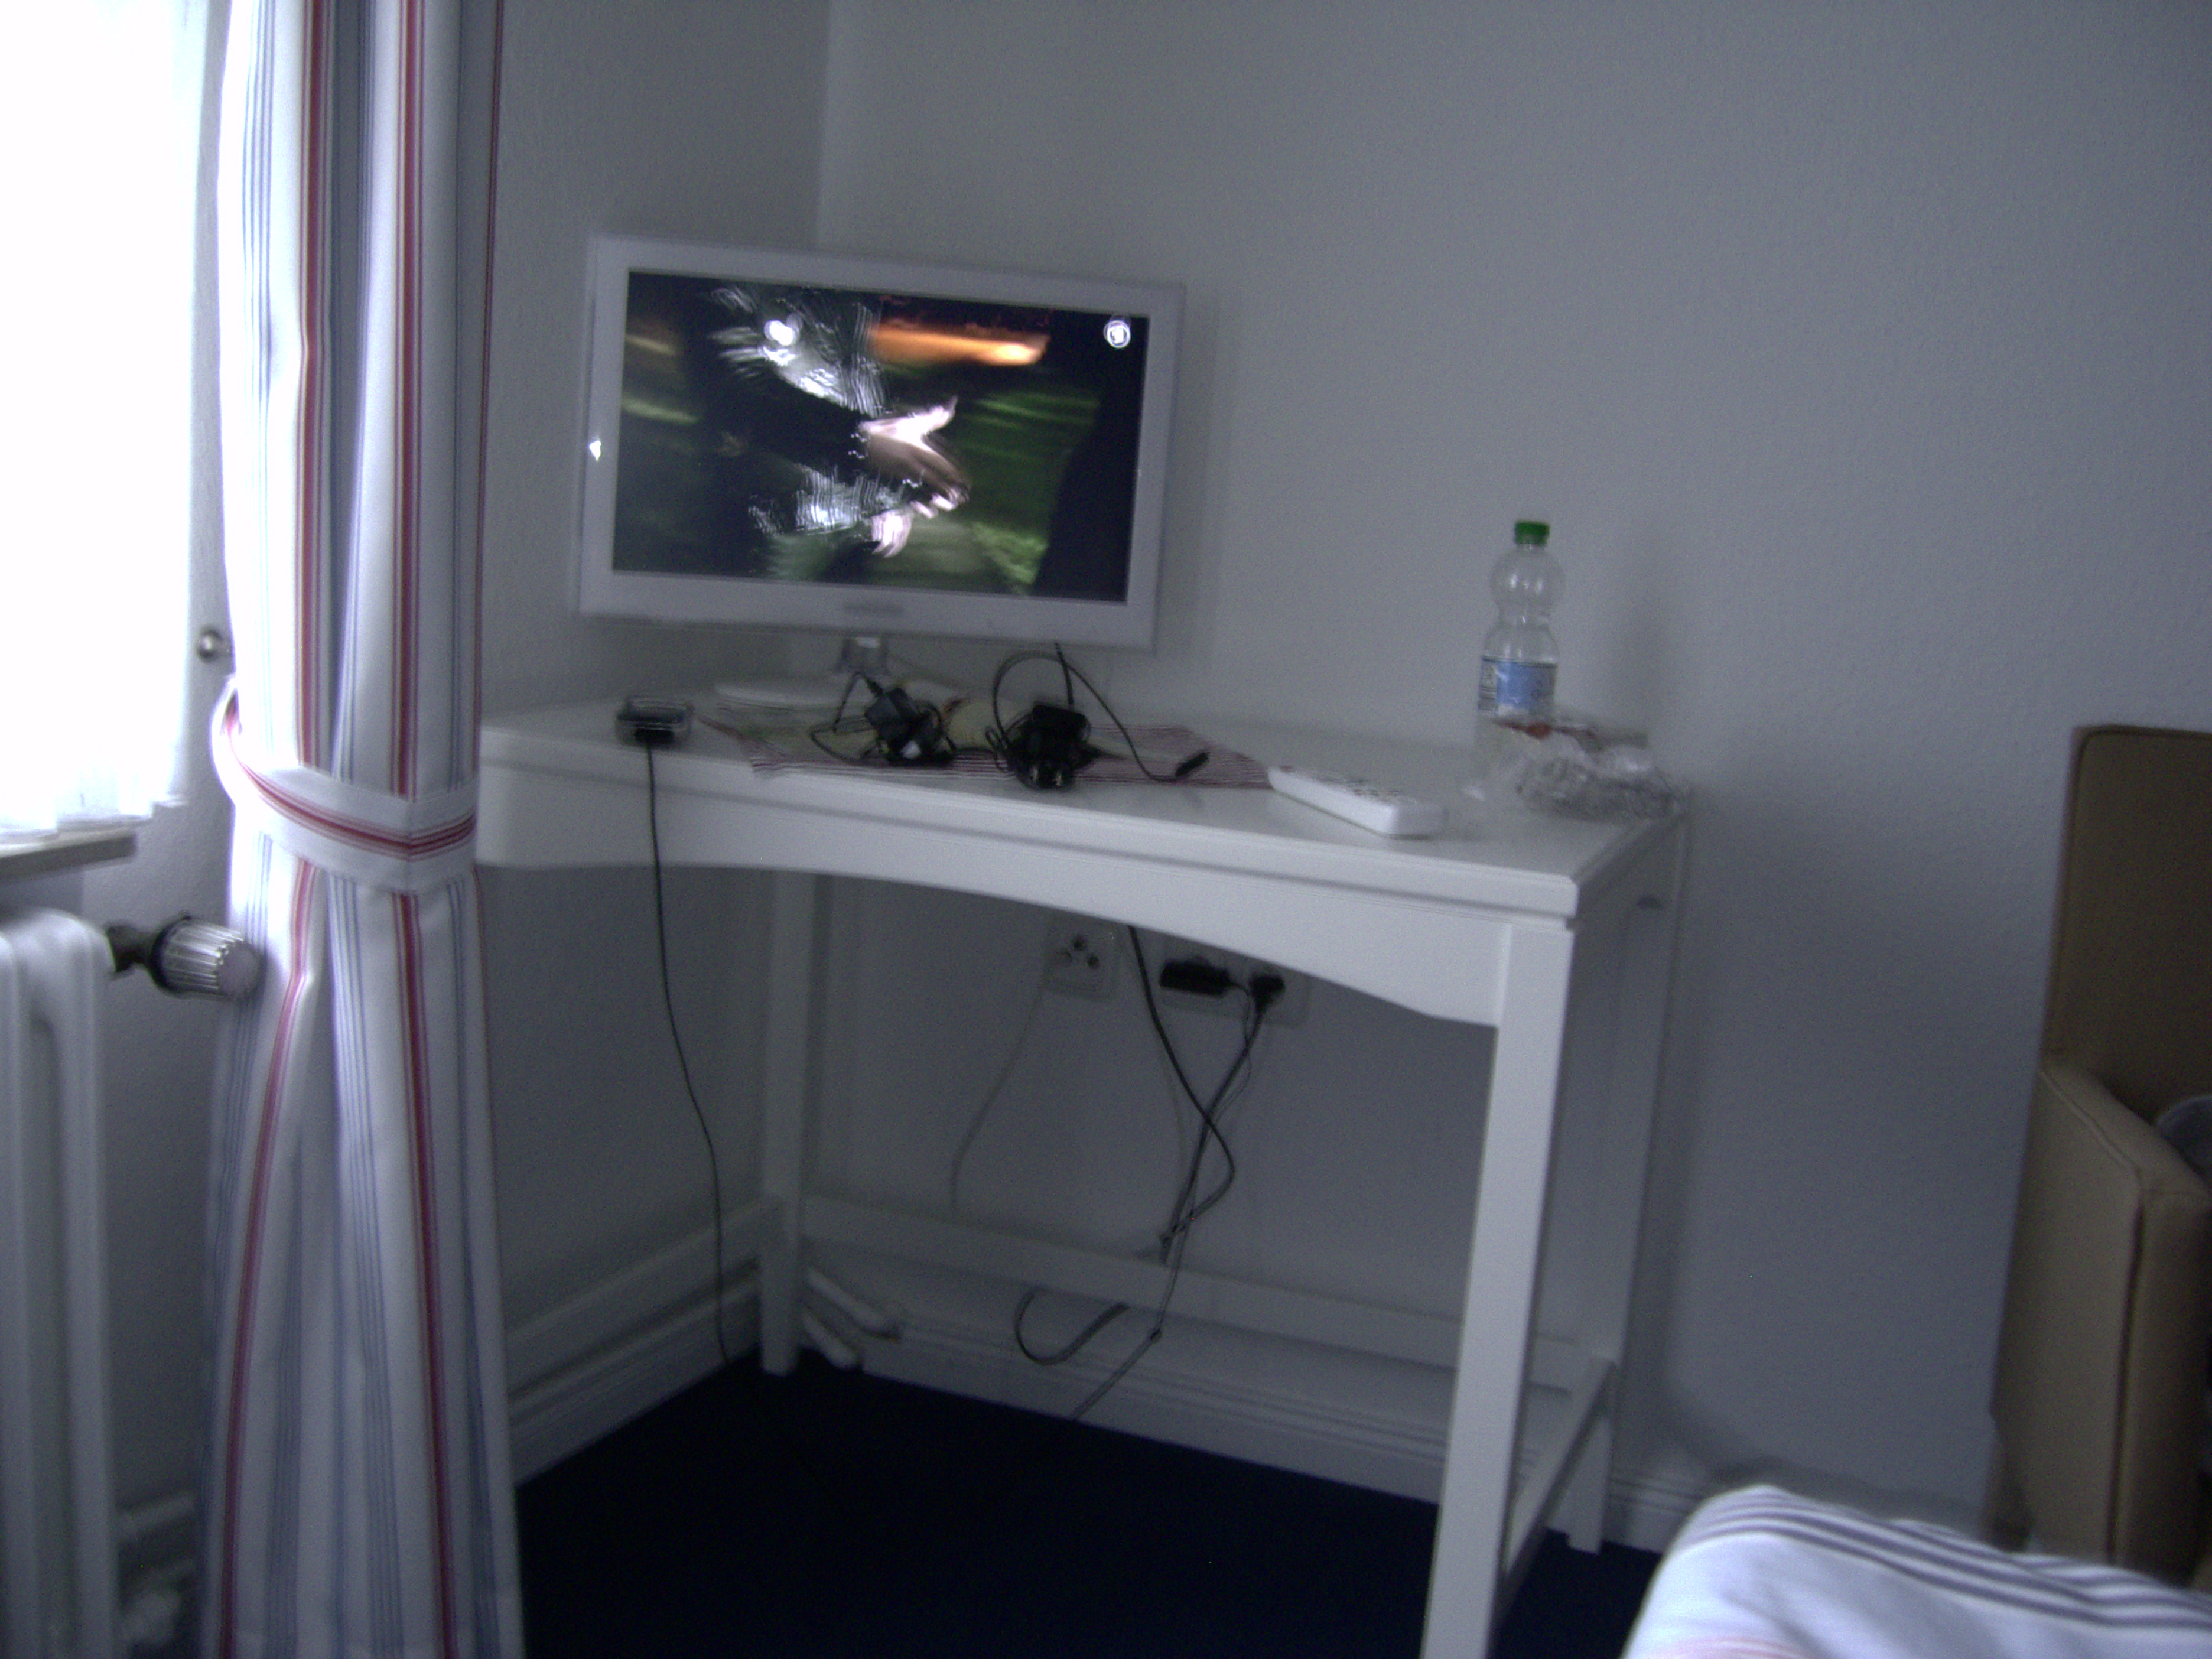 Mein Zimmer! Der TV